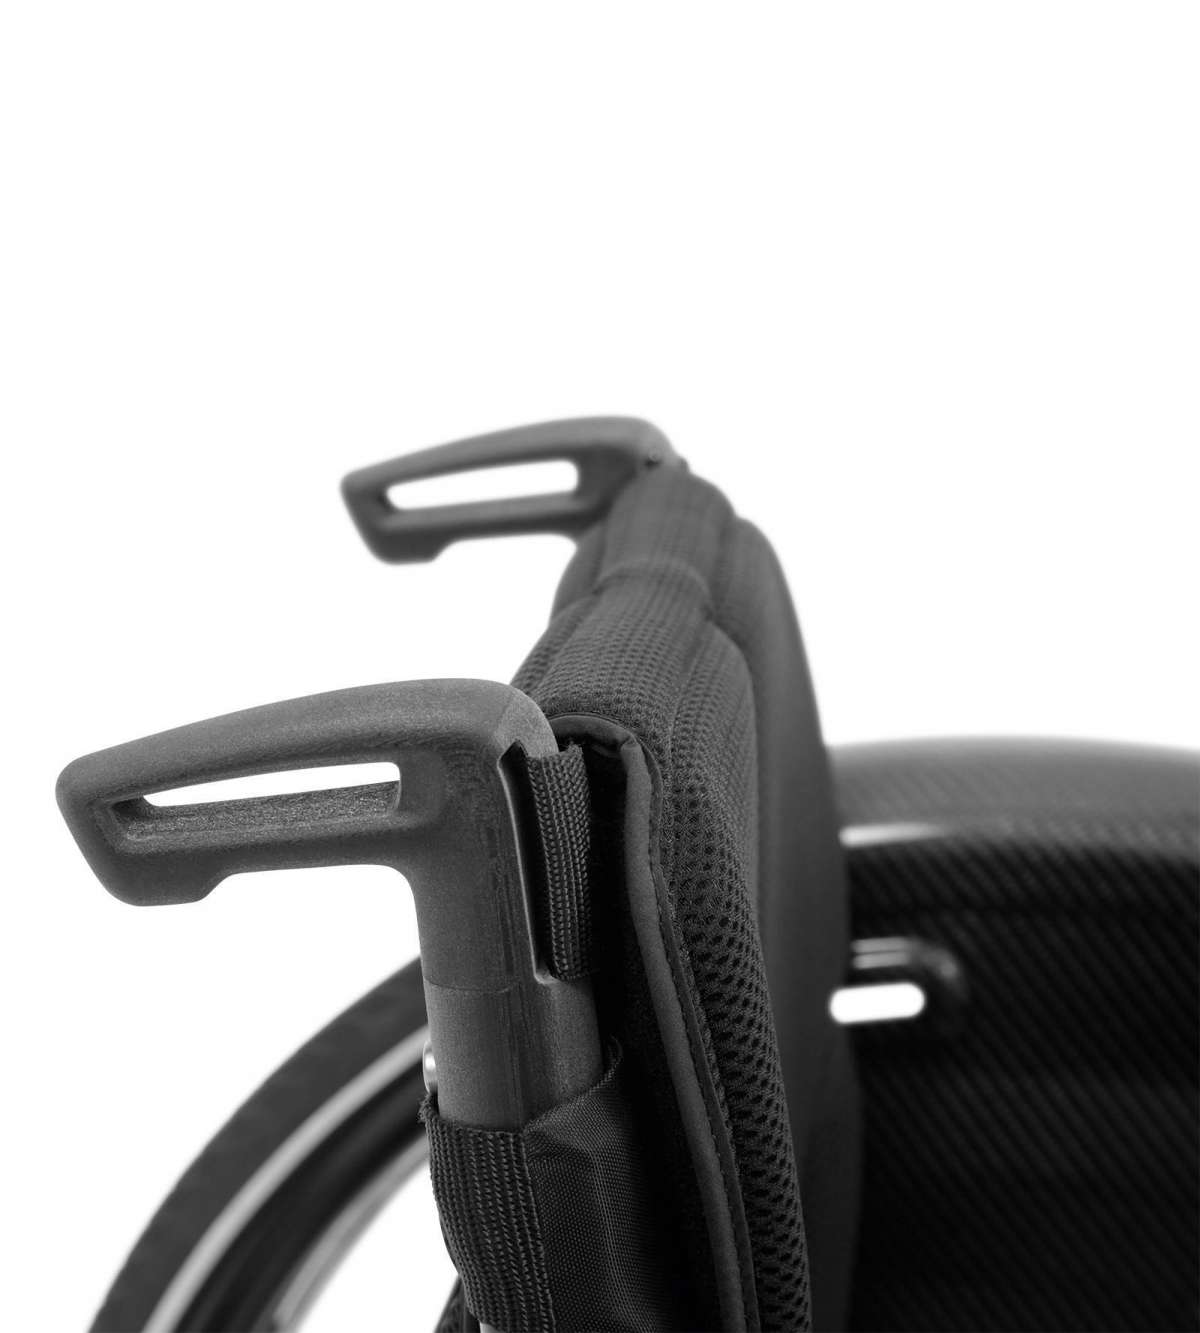 Инвалидное кресло-коляска Авангард DS